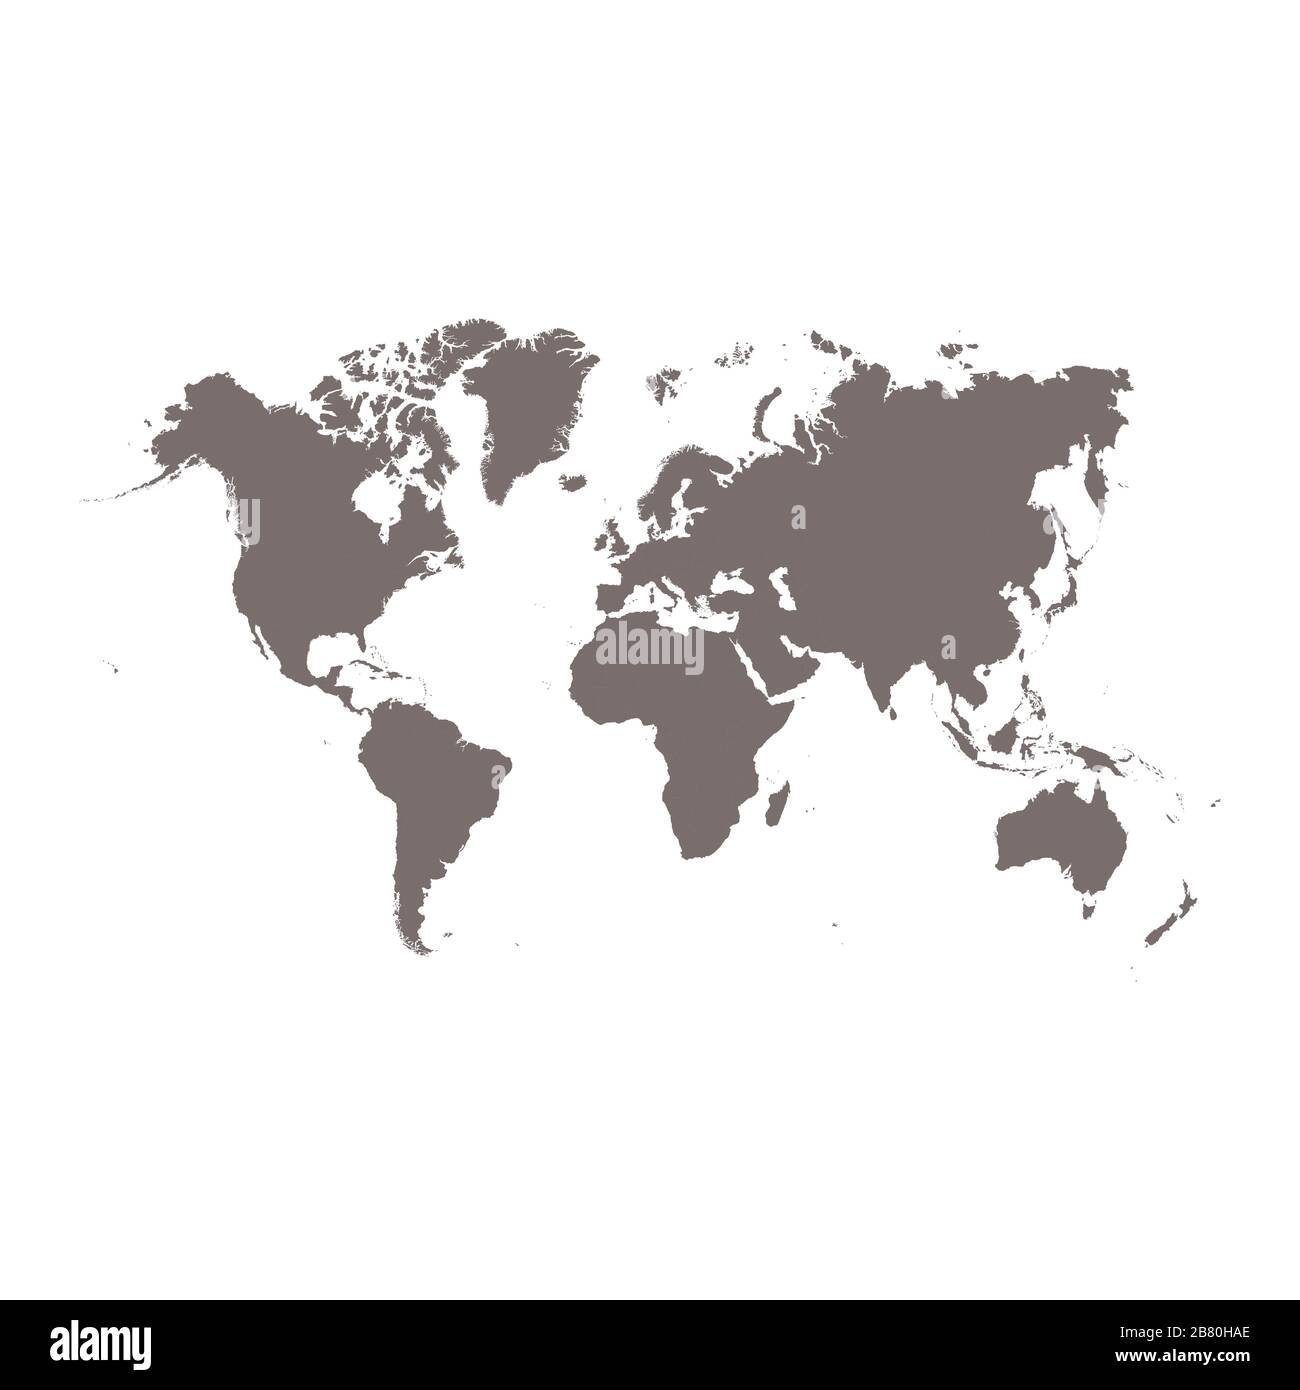 Weltkarten-Vektor isoliert auf weißem Hintergrund. Flat Earth grau ähnliche Vorlage für Website-Muster, Cover, anualen Bericht, Infografiken. Weltkartensymbol für den Globus. Silhouettenkulisse für Reisen. Stock Vektor